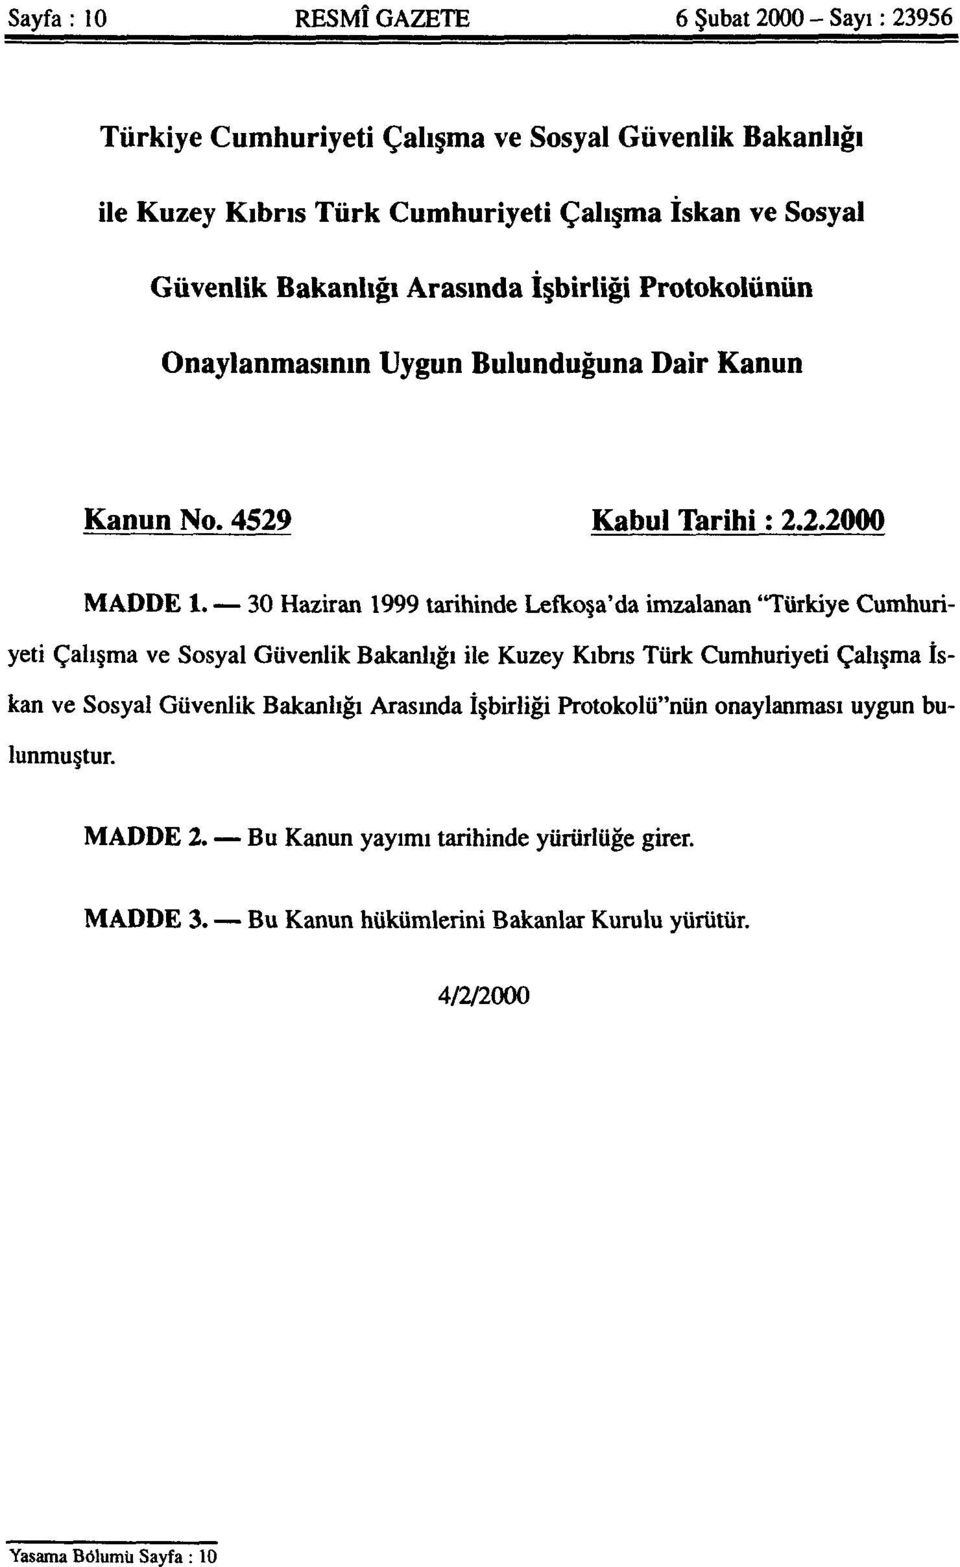 30 Haziran 1999 tarihinde Lefkoşa'da imzalanan "Türkiye Cumhuriyeti Çalışma ve Sosyal Güvenlik Bakanlığı ile Kuzey Kıbrıs Türk Cumhuriyeti Çalışma İskan ve Sosyal Güvenlik